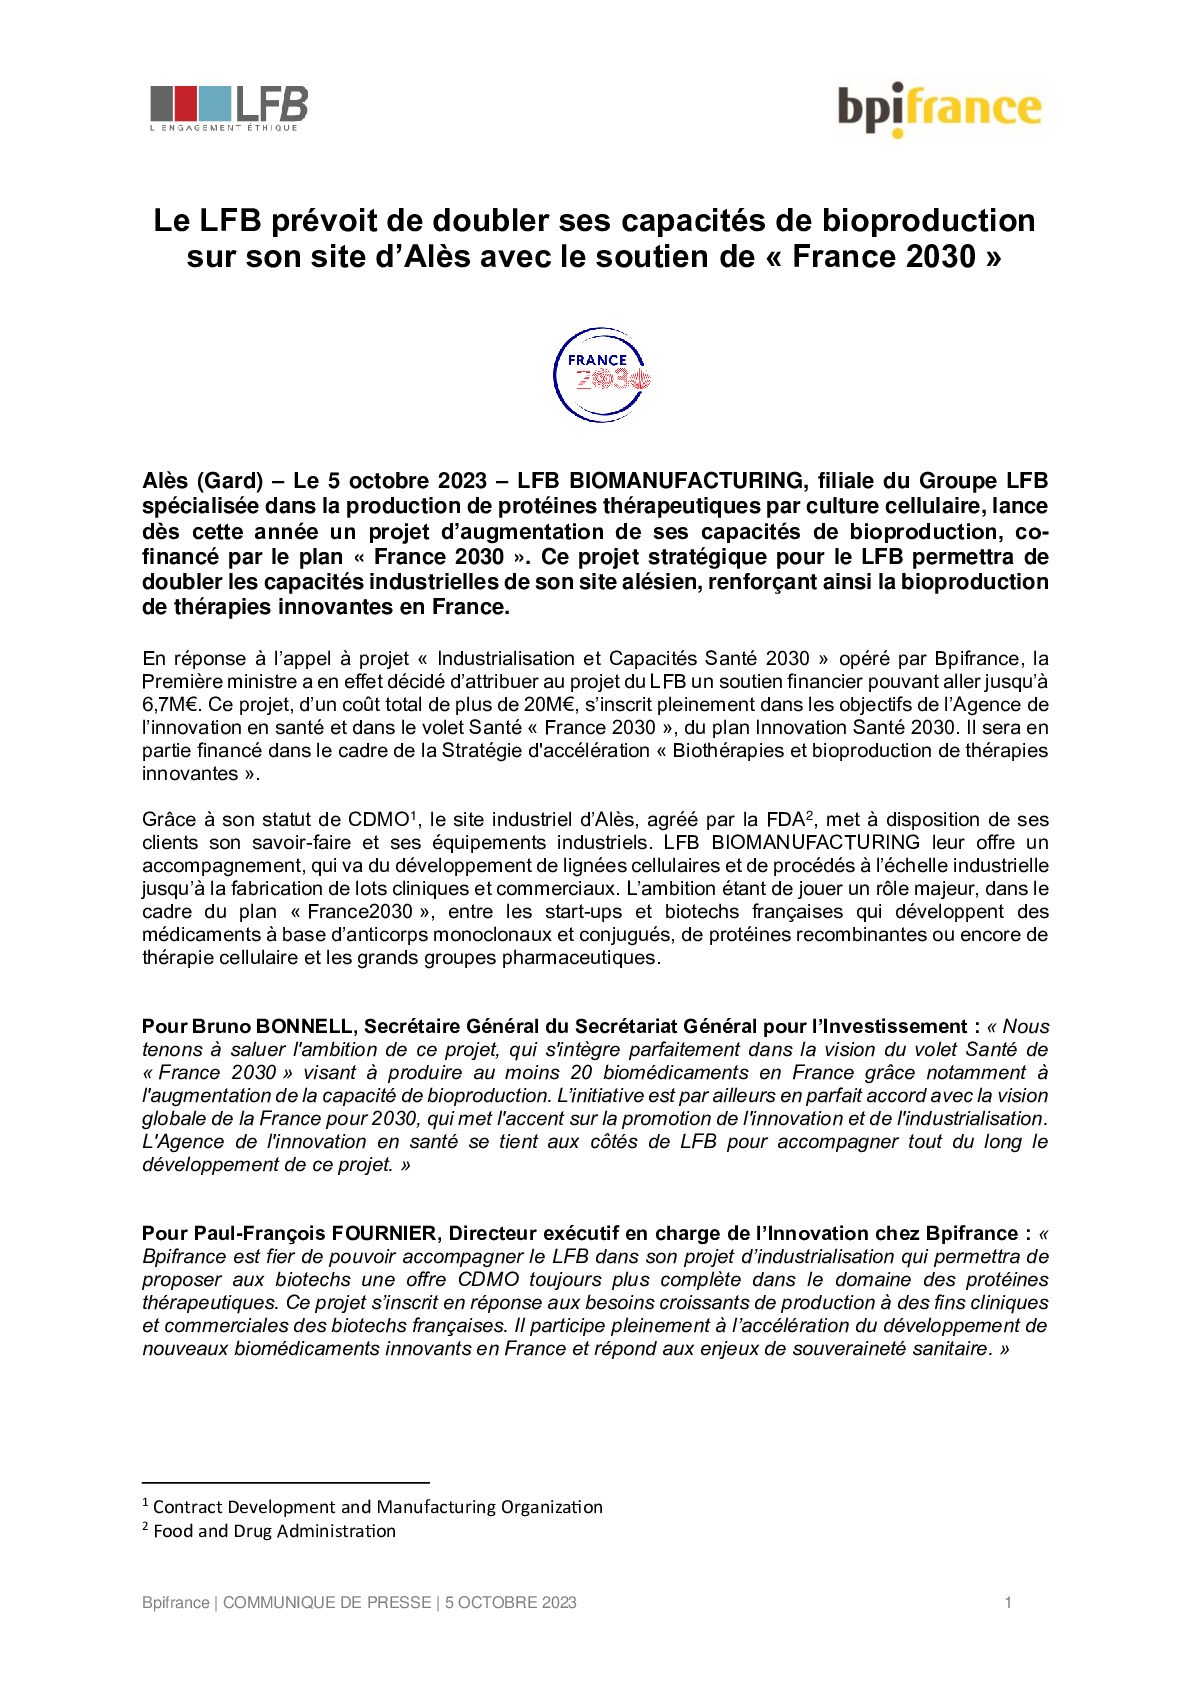 2023 10 09 – CP Bpifrance – Le LFB prévoit de doubler ses capacités de bioproduction sur son site d’Alès avec le soutien de France 2030-pdf